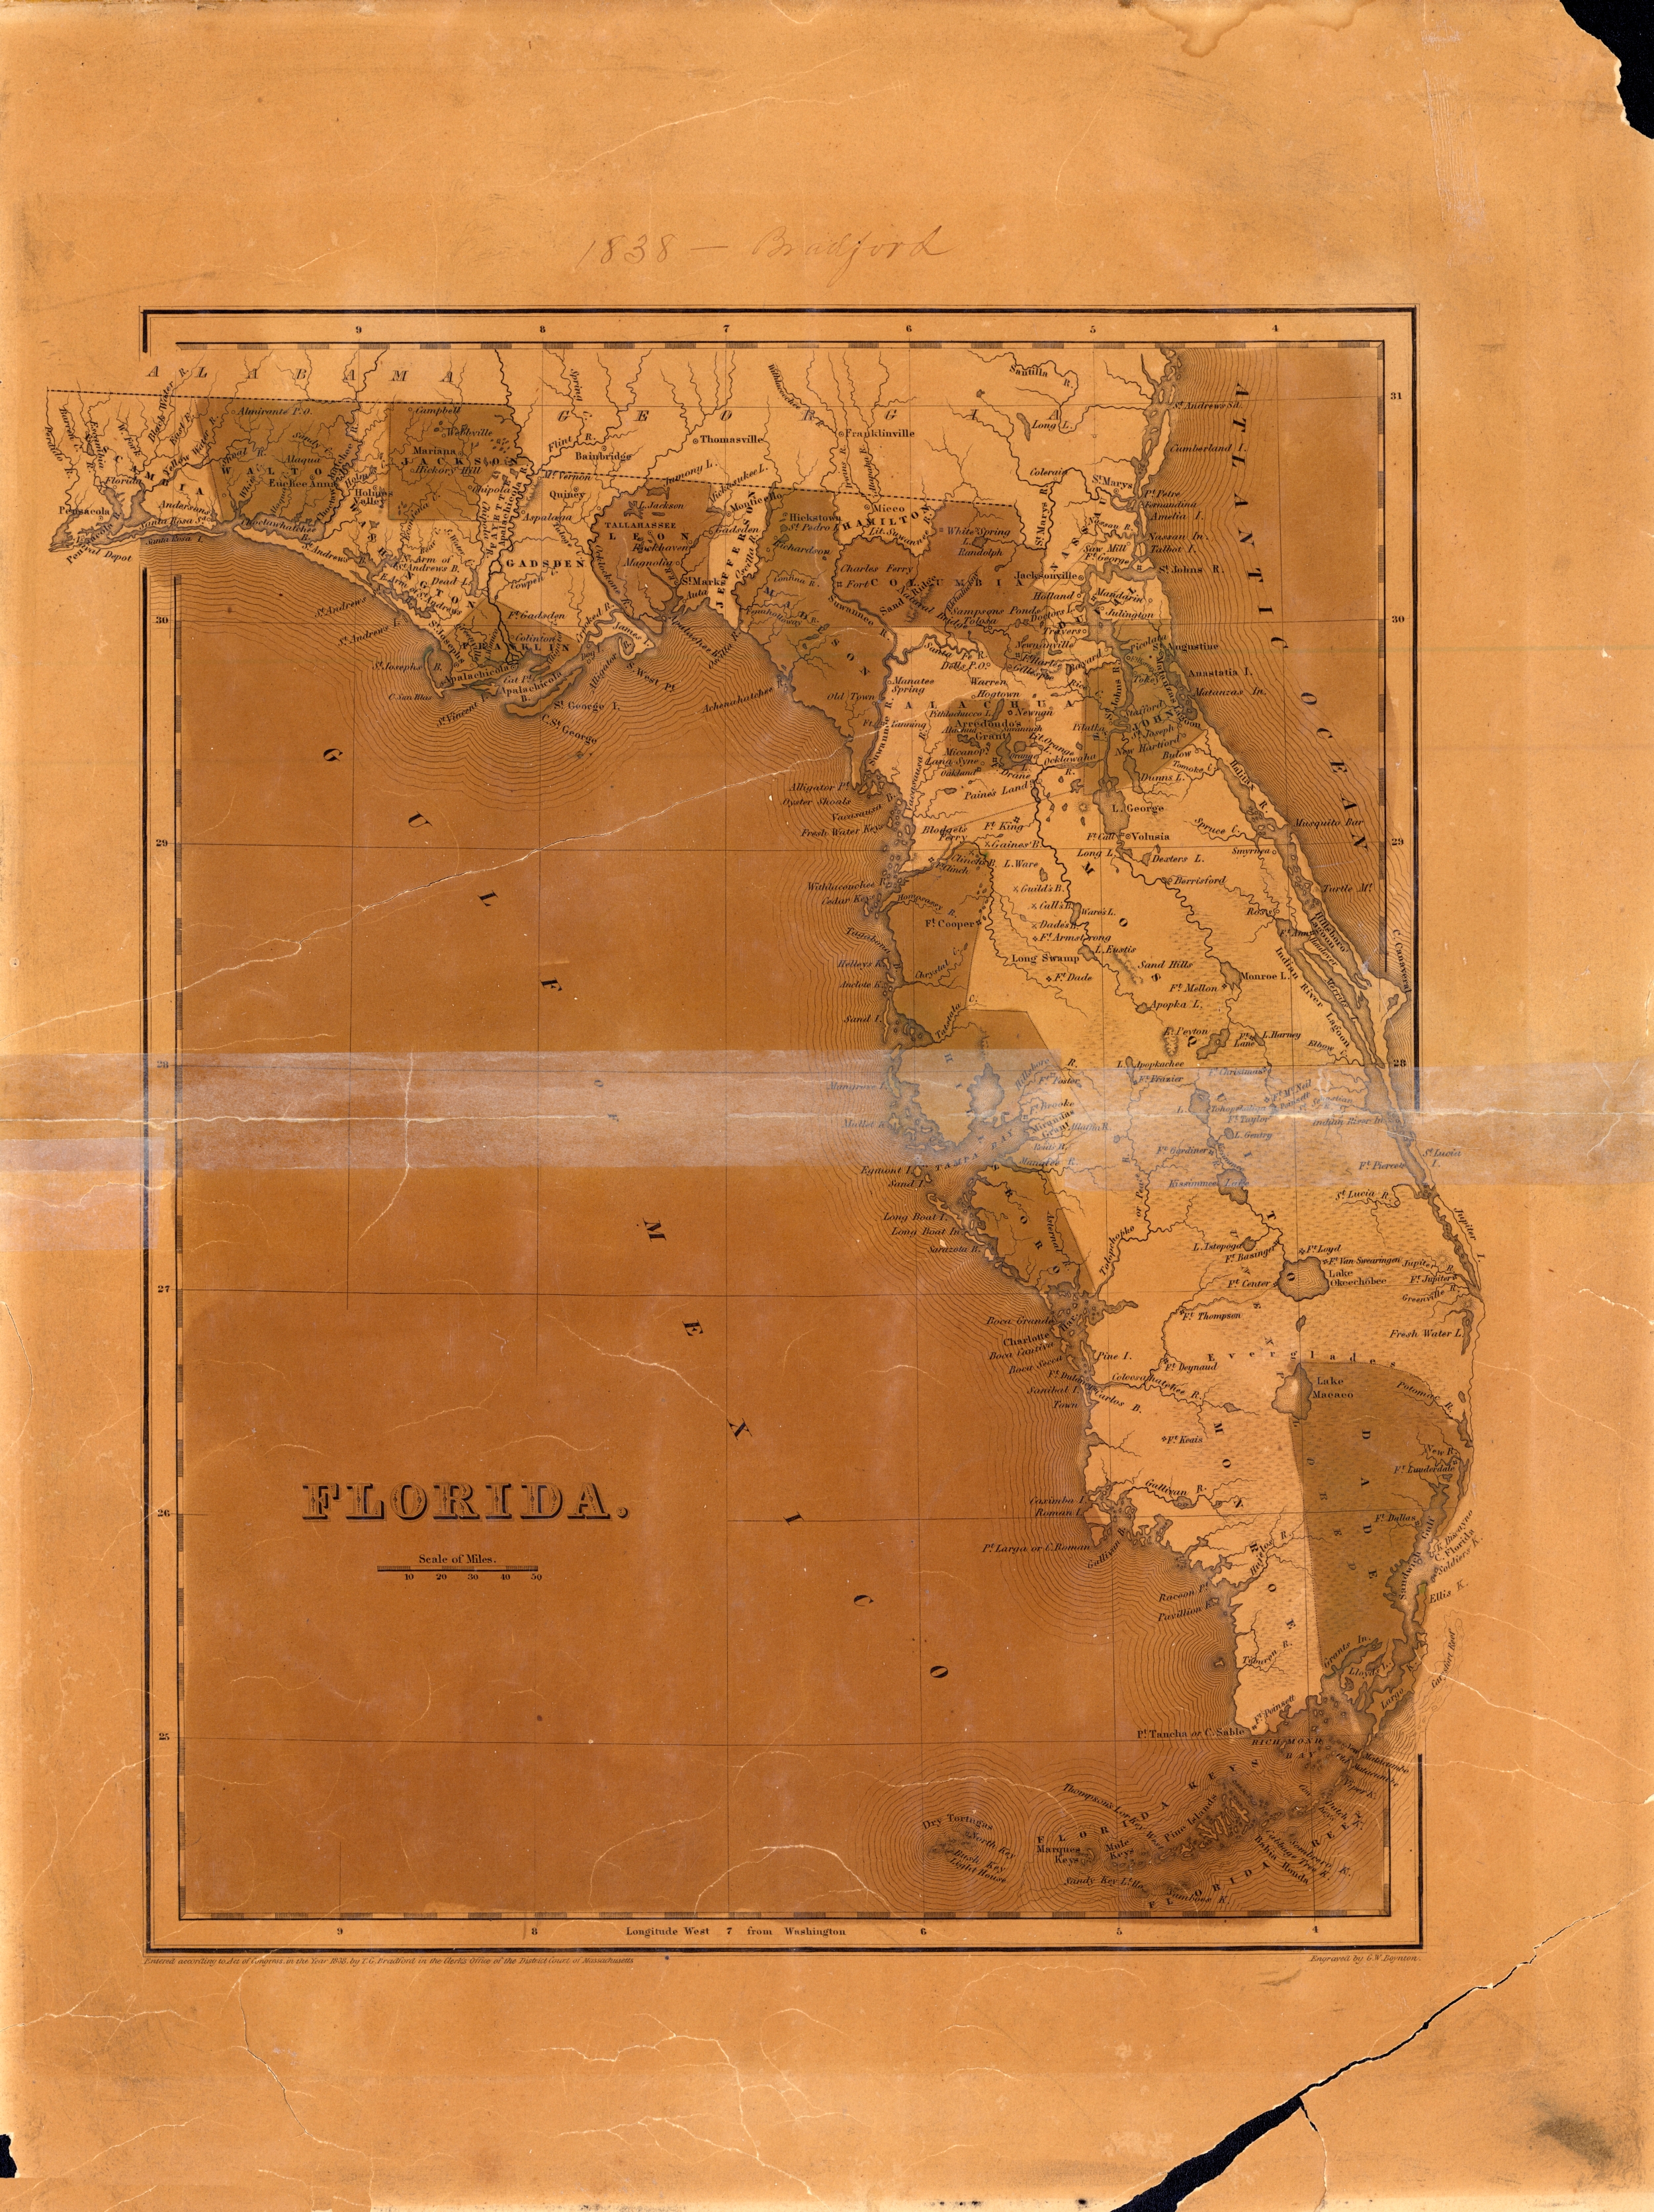 Map of Florida, 1838